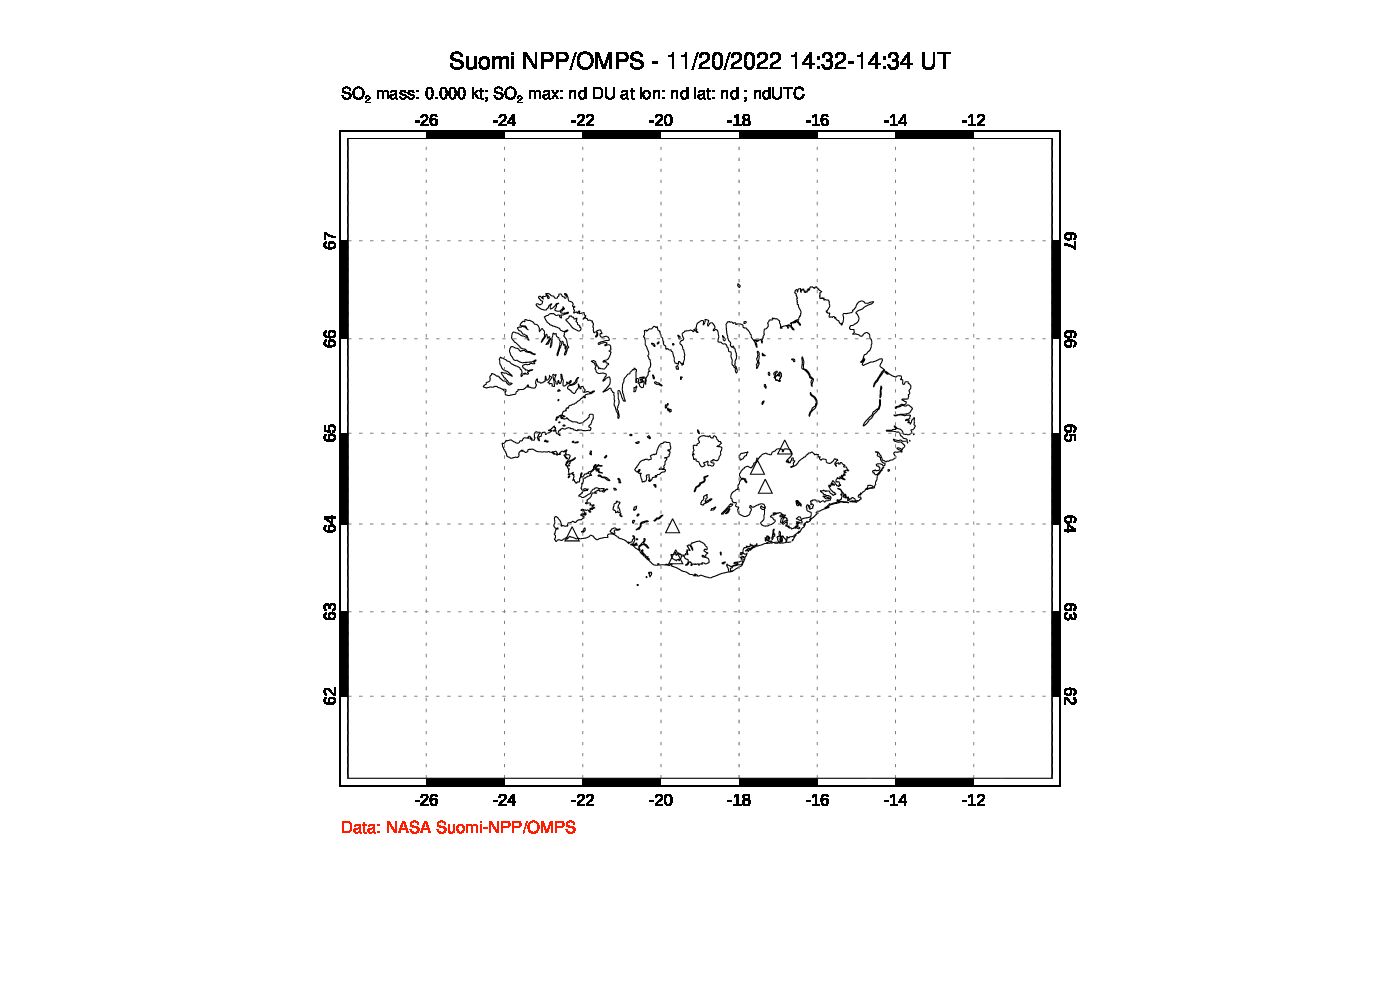 A sulfur dioxide image over Iceland on Nov 20, 2022.